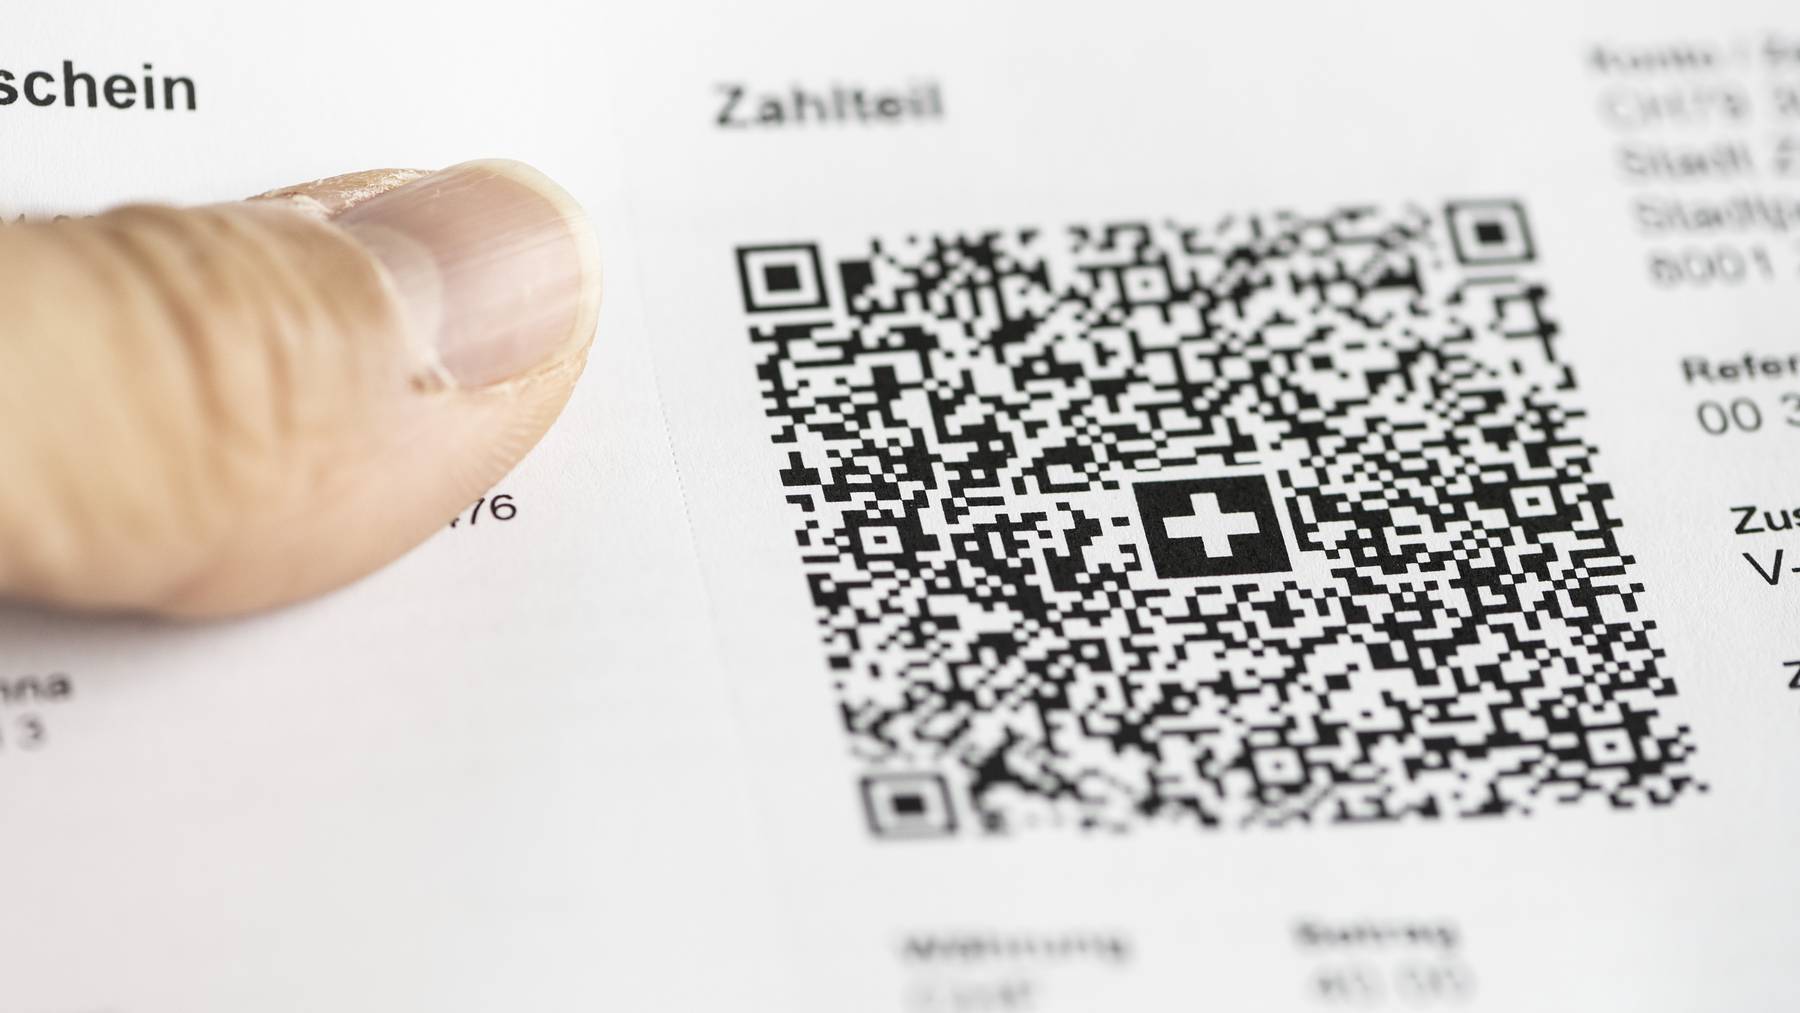 Eine QR-Rechnung, fotografiert am Dienstag, 27. September 2022, in Bern. Die QR-Rechnung loest per 30. September 2022 die heutigen Einzahlungsscheine ab.